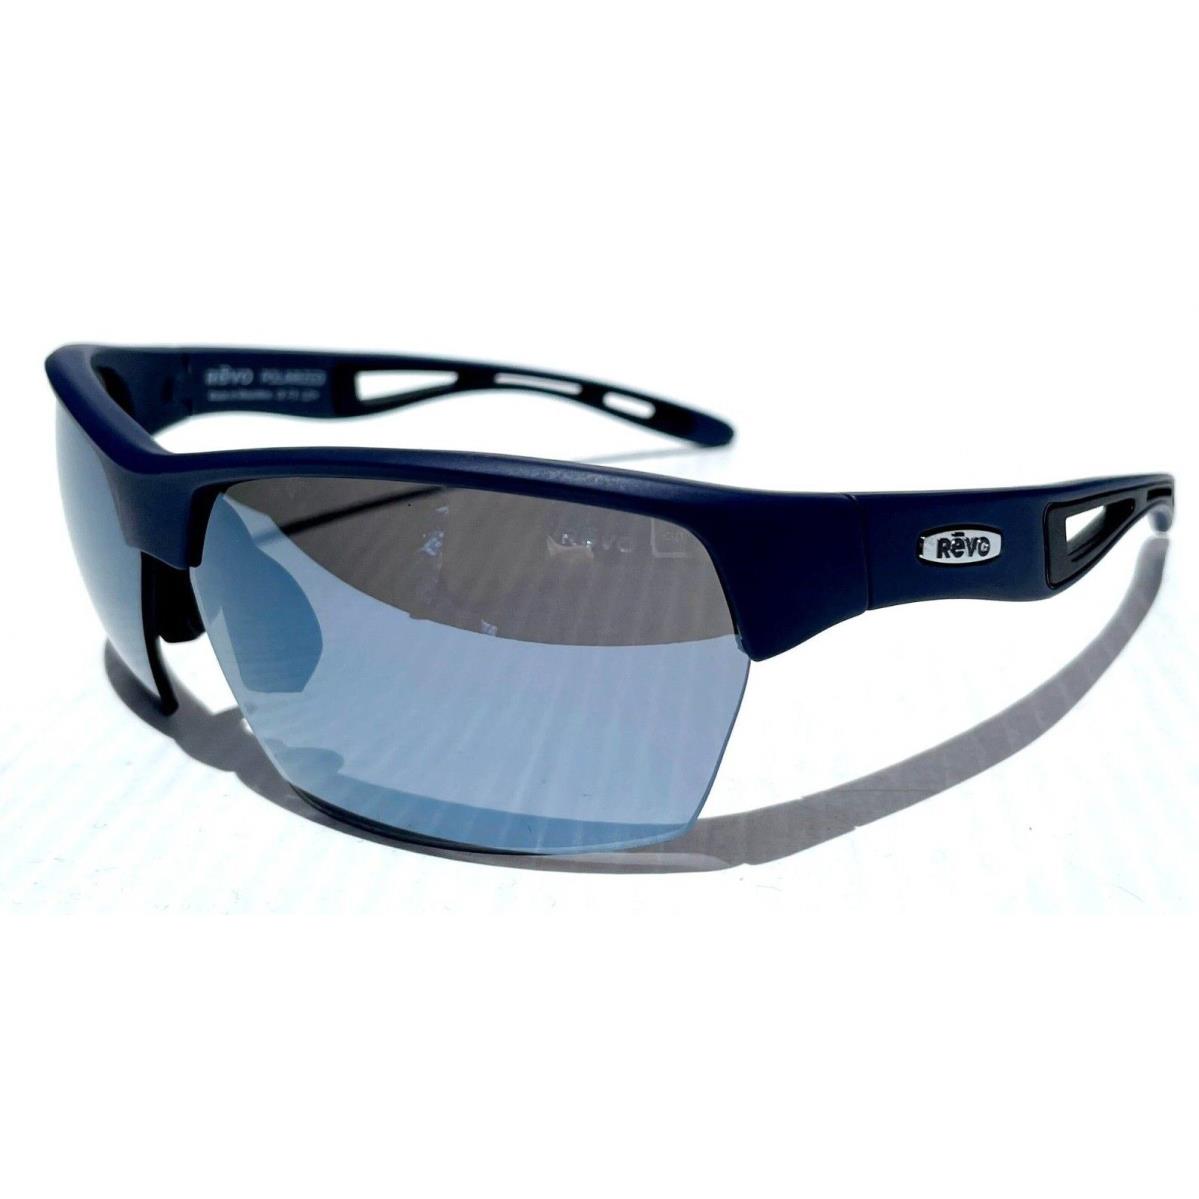 Revo sunglasses JETT - Navy Frame, Gray Lens 9